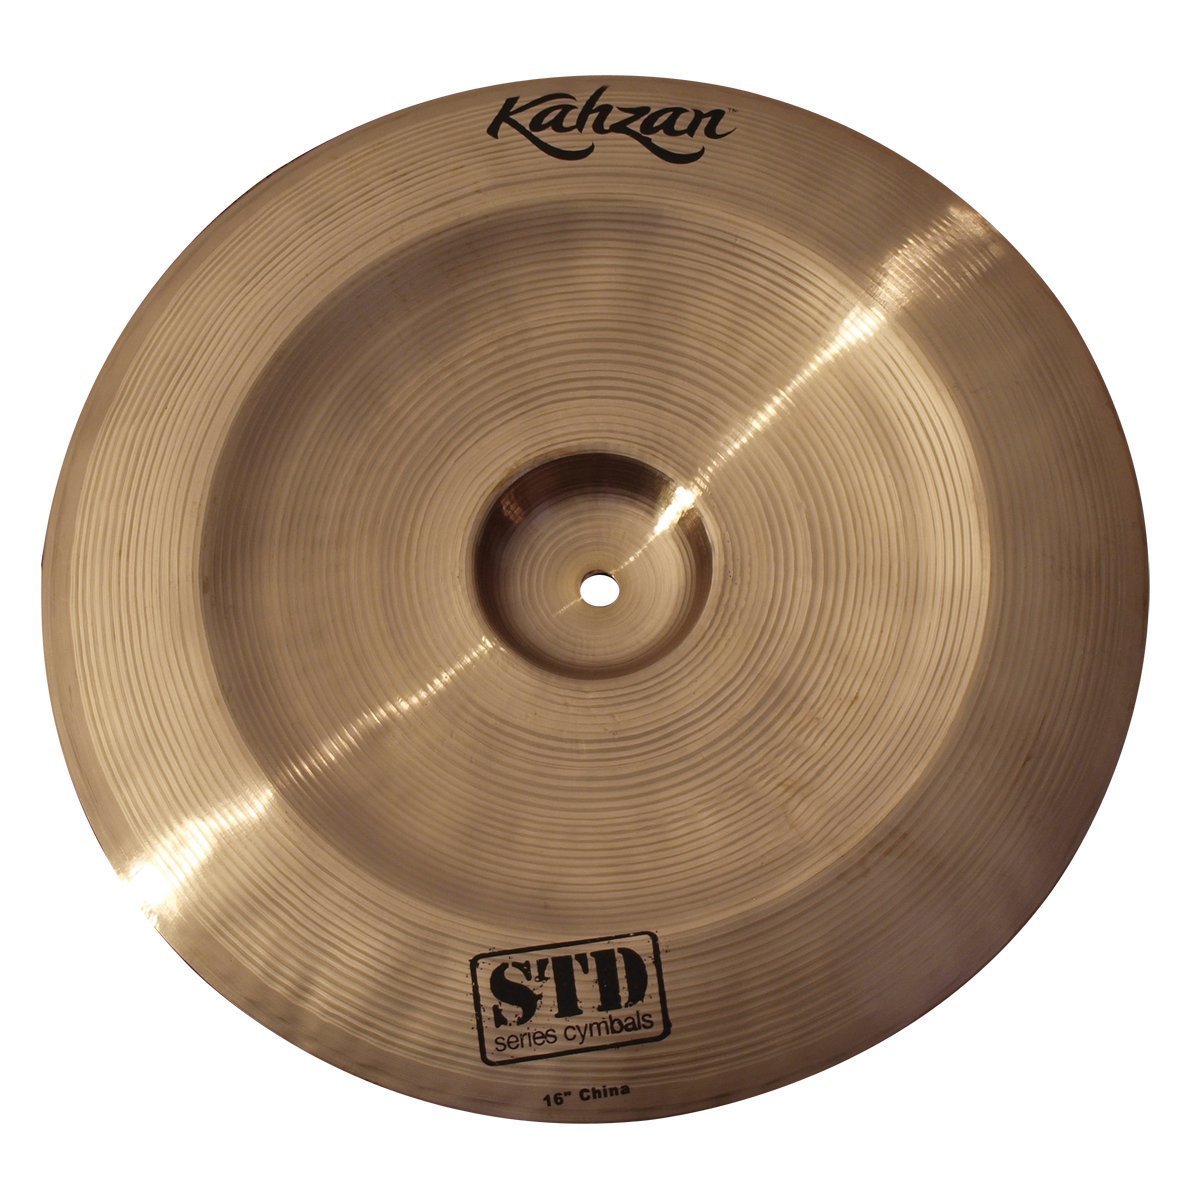 Kahzan 'STD Series' China Cymbal (16")